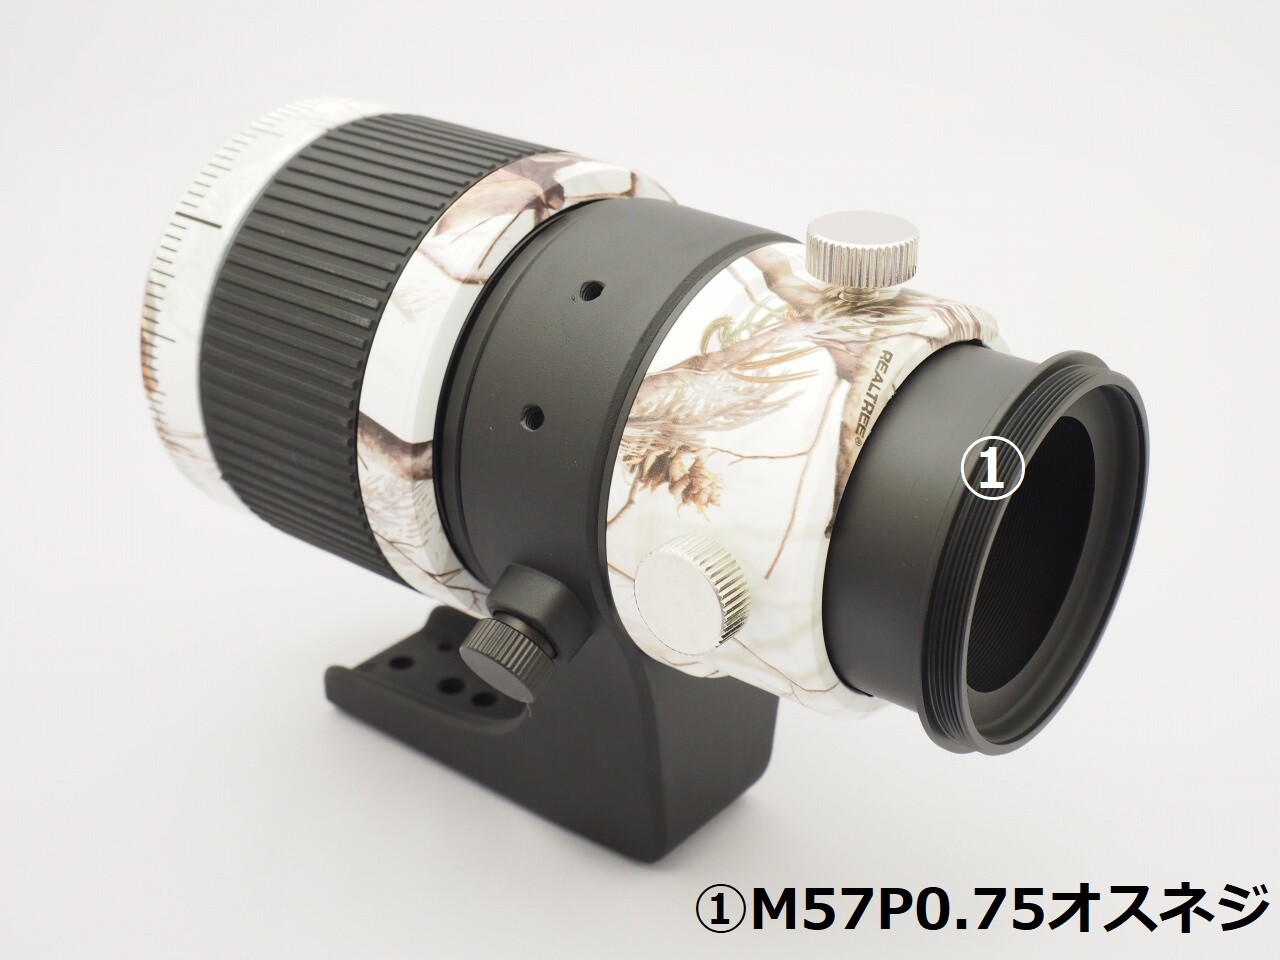 ケンコー製MILTOL400mmF6.7EDがBORGな件 2020/07/20 : 中川光学研究室 